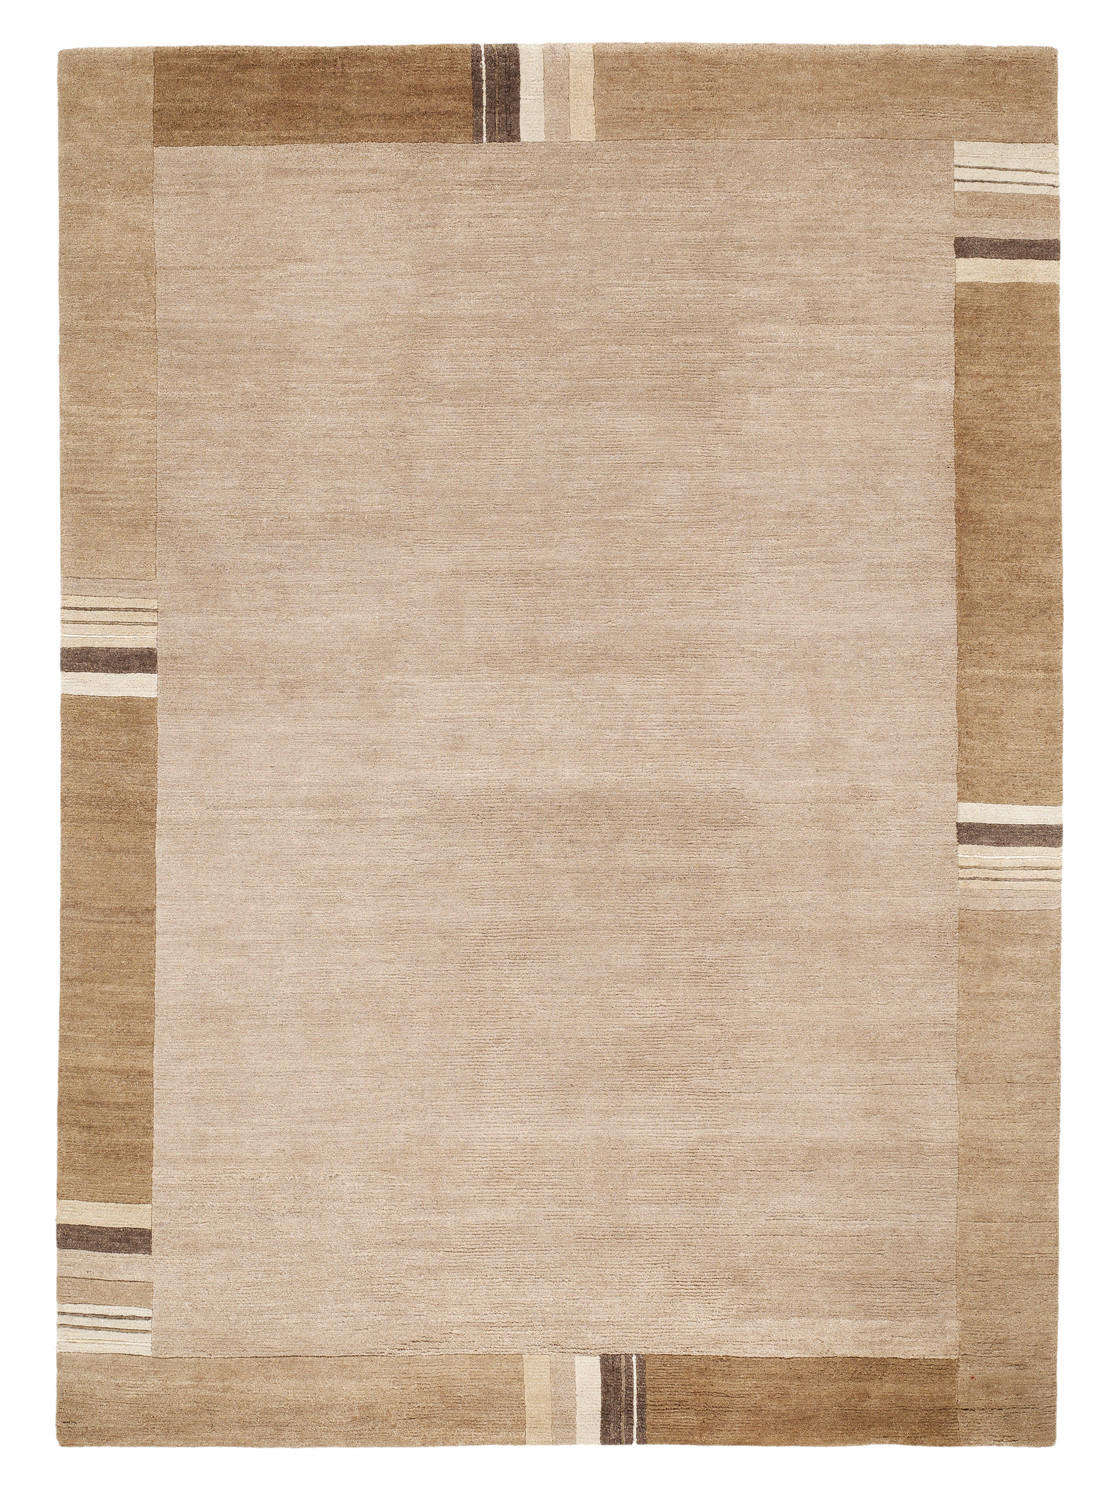 Wollteppich  120/180 cm  Hellbraun   - Hellbraun, LIFESTYLE, Textil (120/180cm) - Cazaris